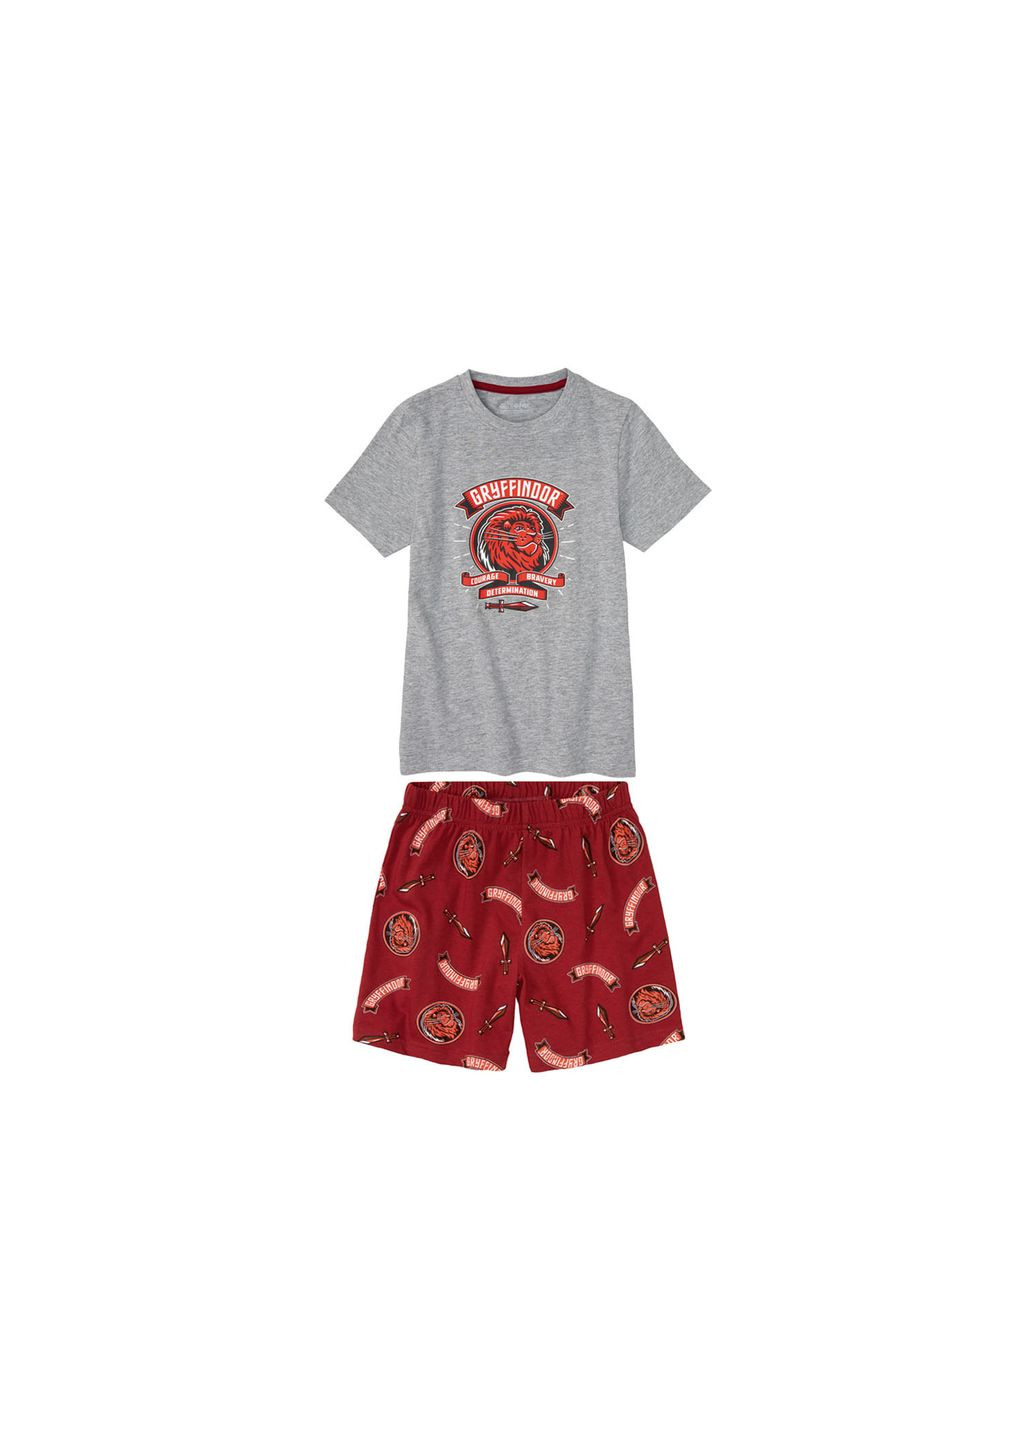 Комбинированная пижама (футболка и шорты) для мальчика harry potter 396855 Disney